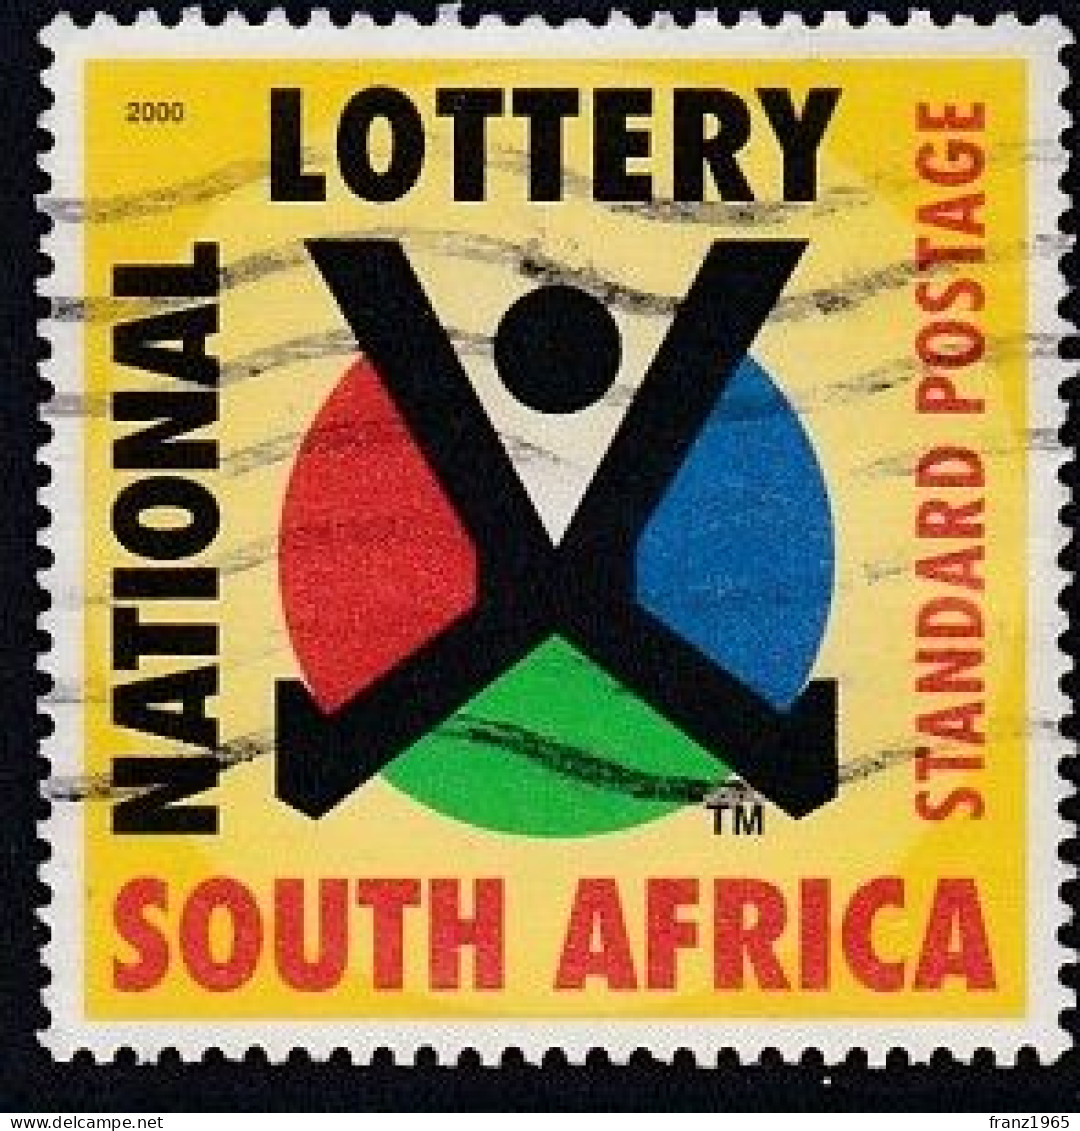 National Lottery - 2000 - Usati